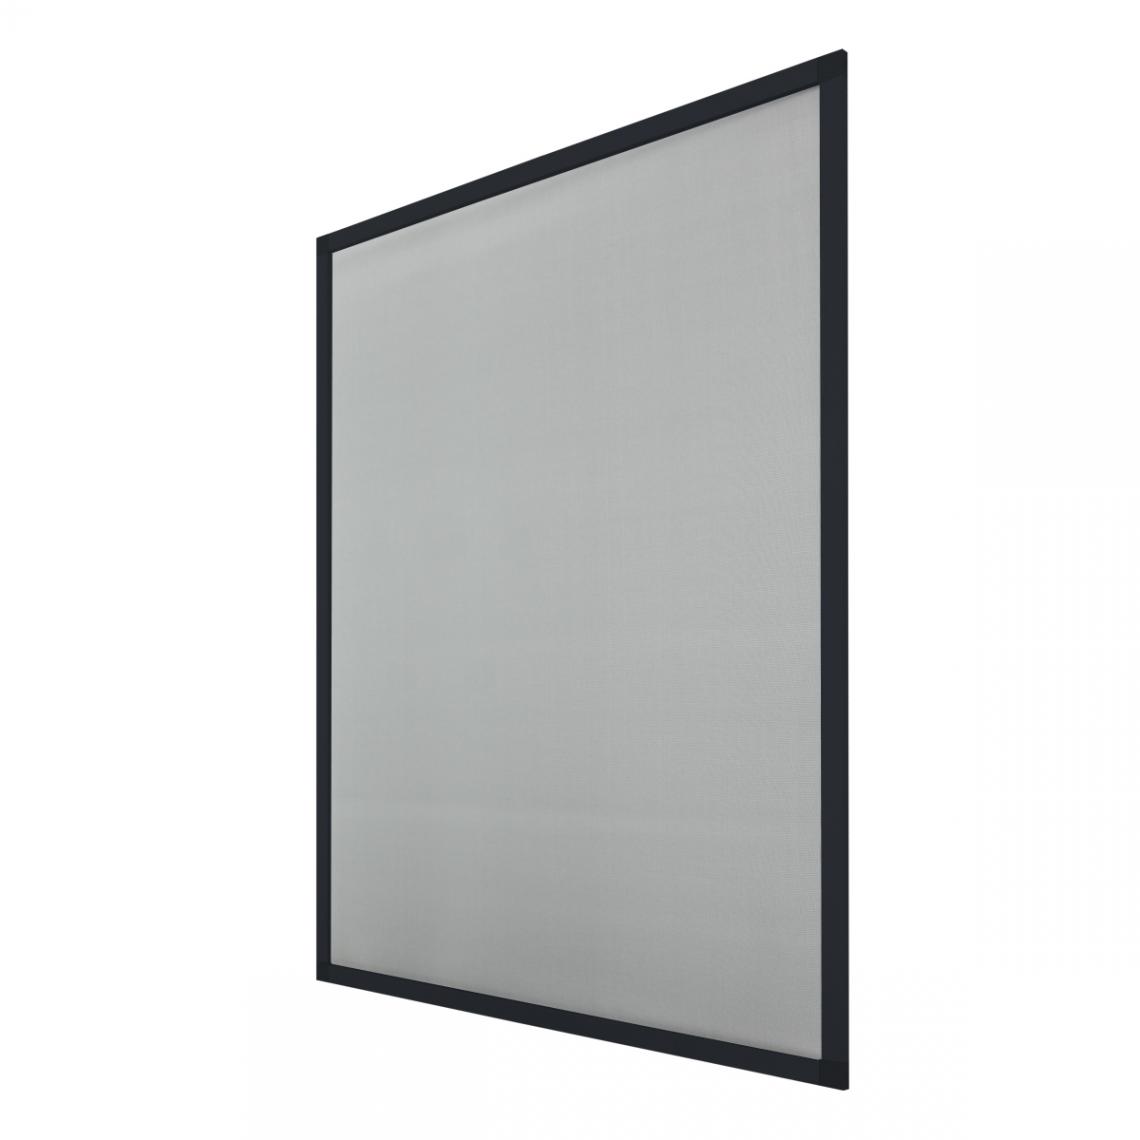 Ecd Germany - 5 x moustiquaire cadre en aluminium anthracite 130 x 150 cm - Moustiquaire Fenêtre